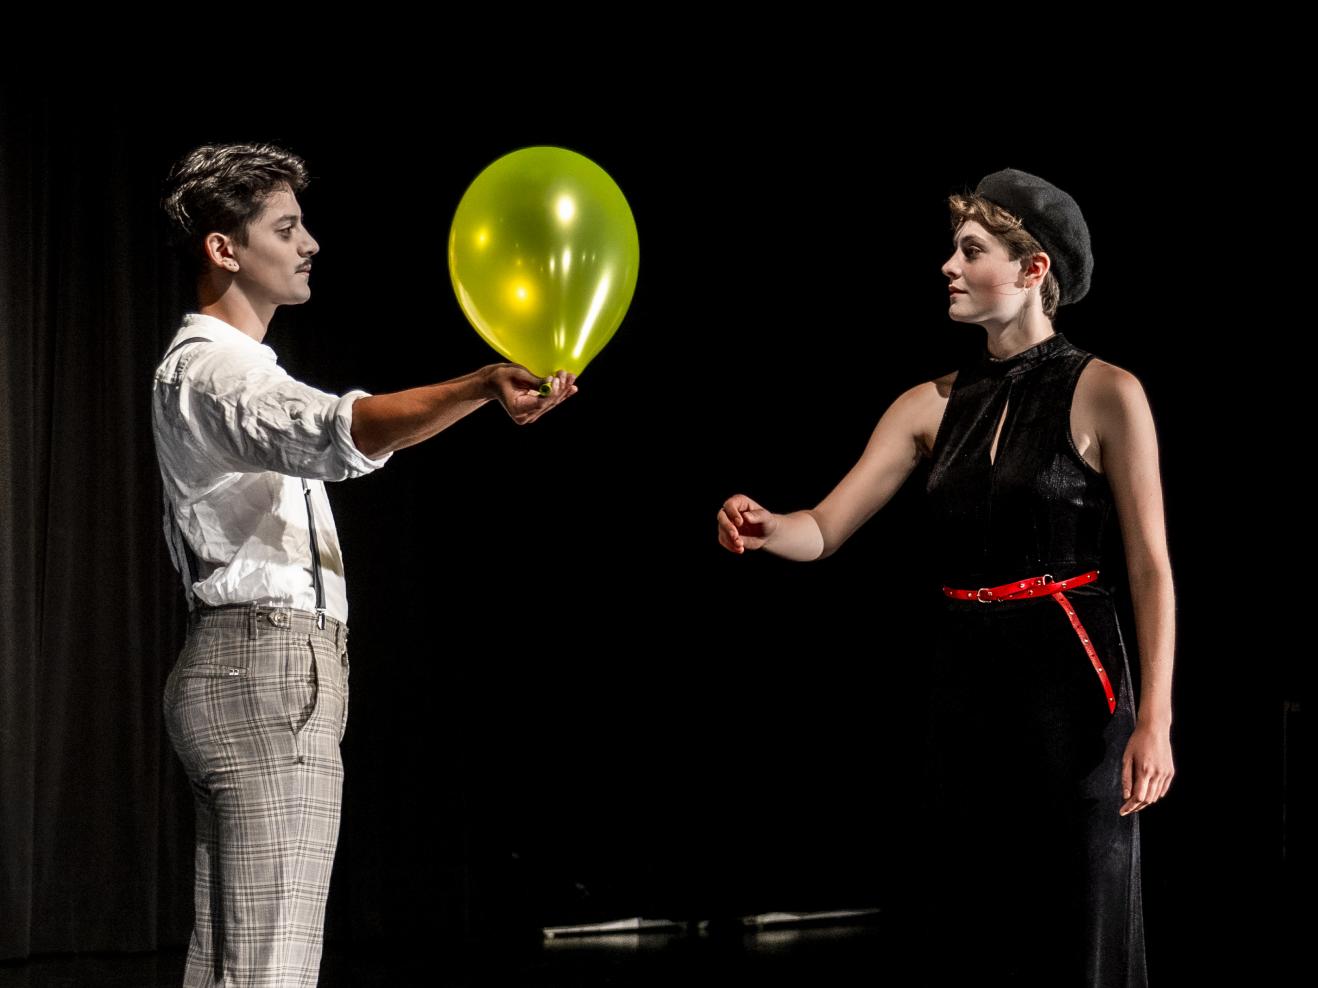 Zwei Personen auf der Bühne, eine reicht der anderen einen aufgeblasenen gelben Luftballon.